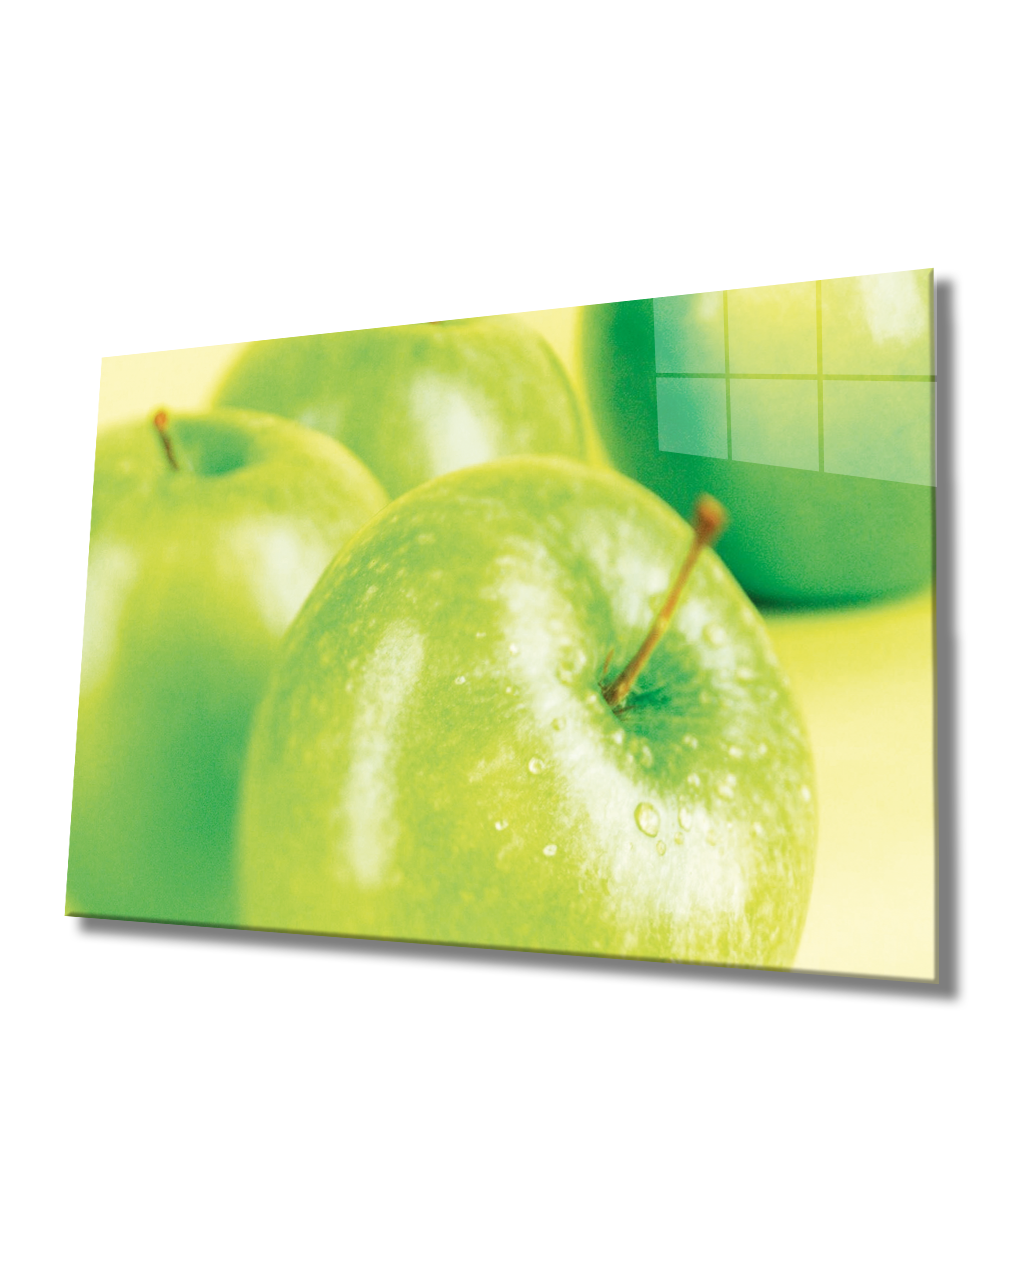 Yeşil Elmalar Cam Tablo  4mm Dayanıklı Temperli Cam, Green Apple Glass Wall Art